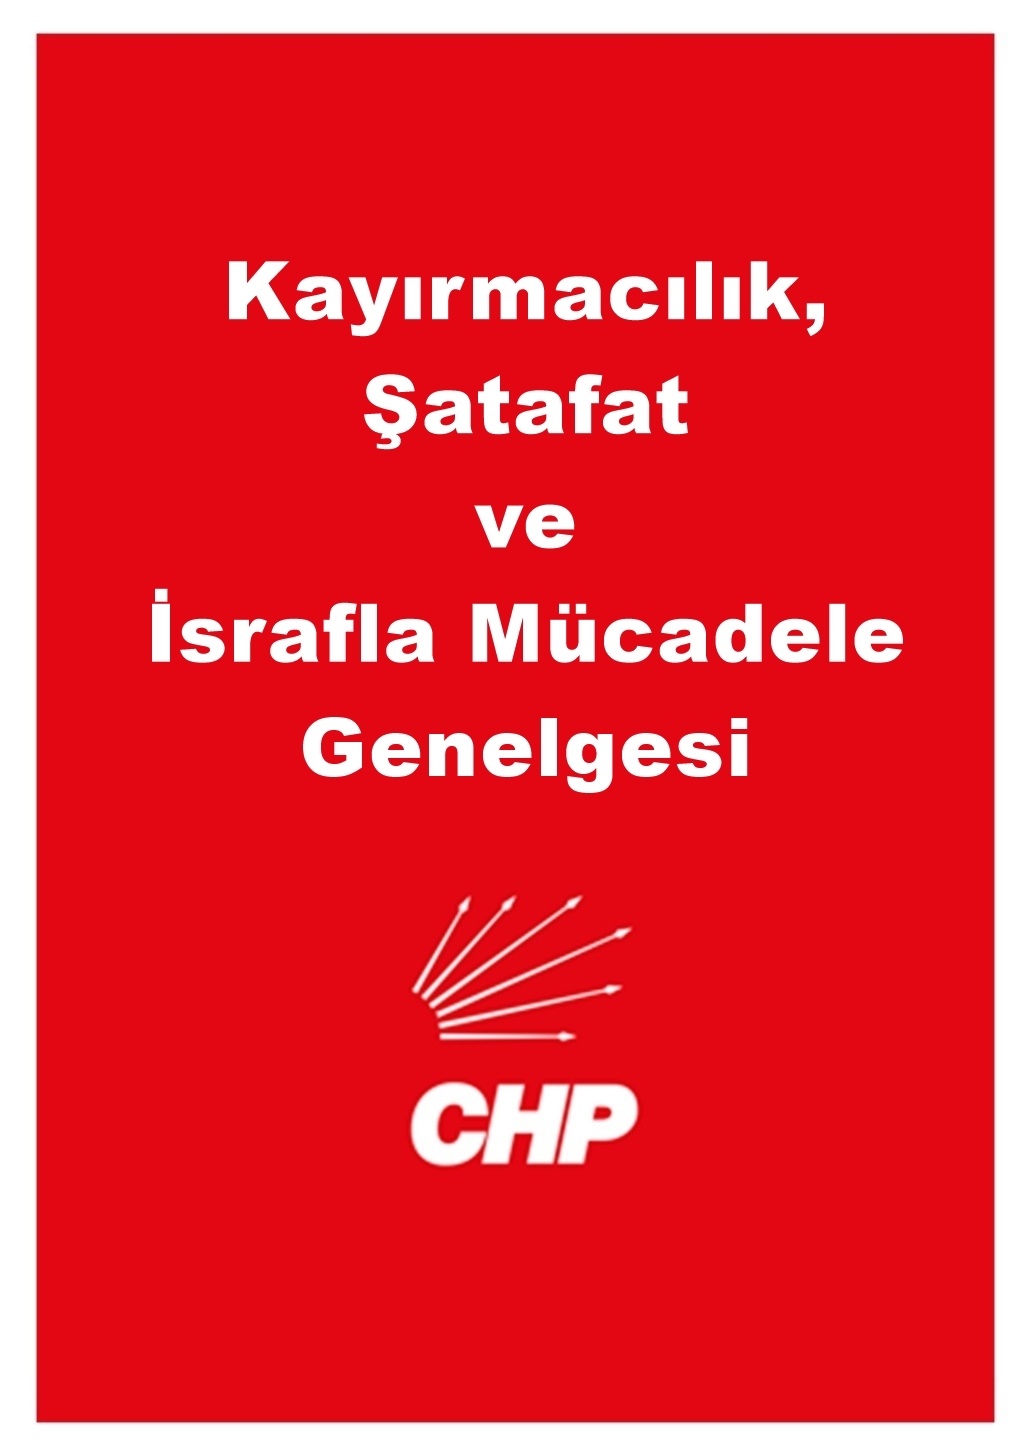 CHP Yerel Yönetimler "Kayırmacılık, Şatafat ve İsrafla Mücadele" Genelgesi